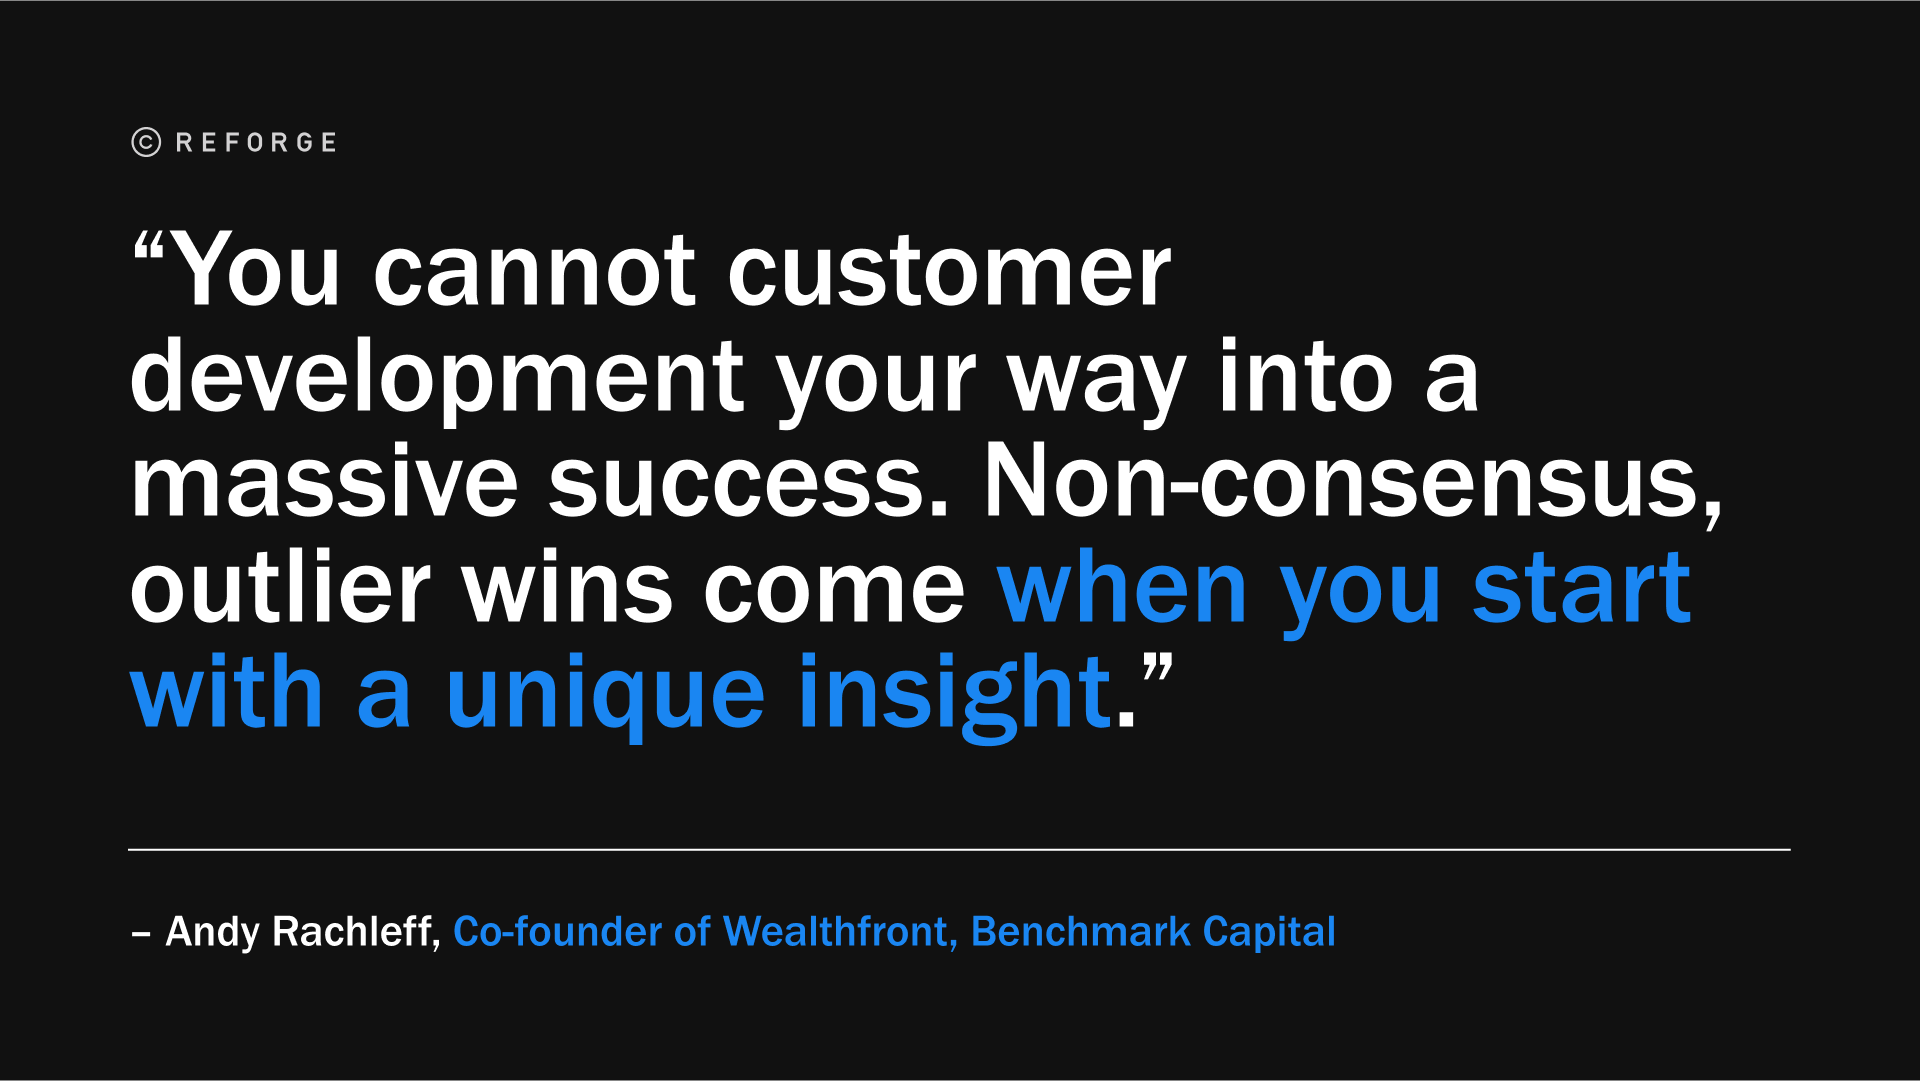 ”“你不能通过客户开发来获得巨大的成功。当你一开始就有独特的见解时，非共识、异类的胜利就会到来。”— Andy Rachleff, Co-founder of Wealthfront, Benchmark Capital